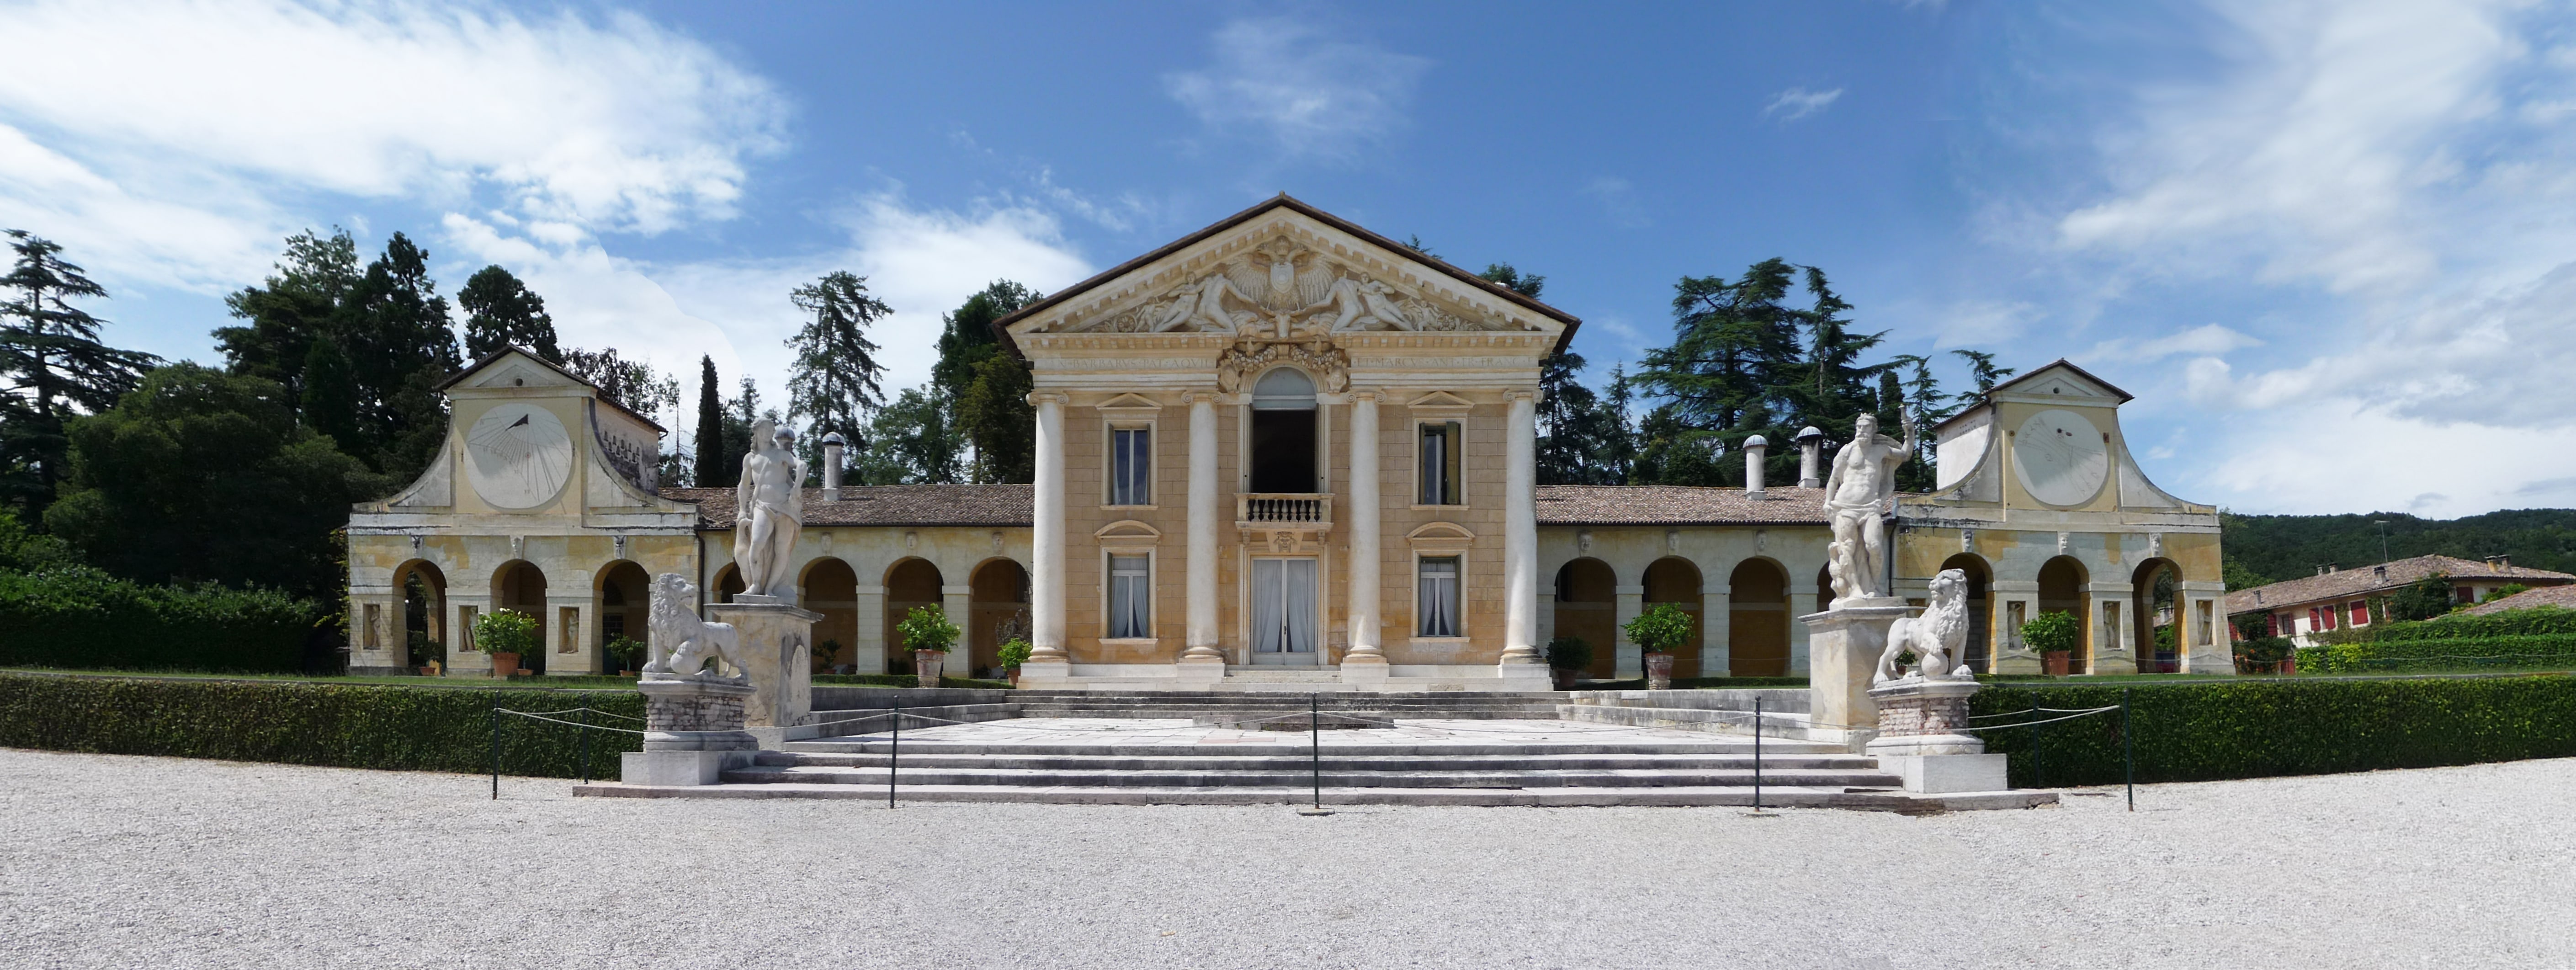 Villa Barbaro, Maser<br /><br />A Barbaro család megbízatásából épült az 1560-as évek környékén.<br /><br />Kép: Wikimedia Commons / Marcok